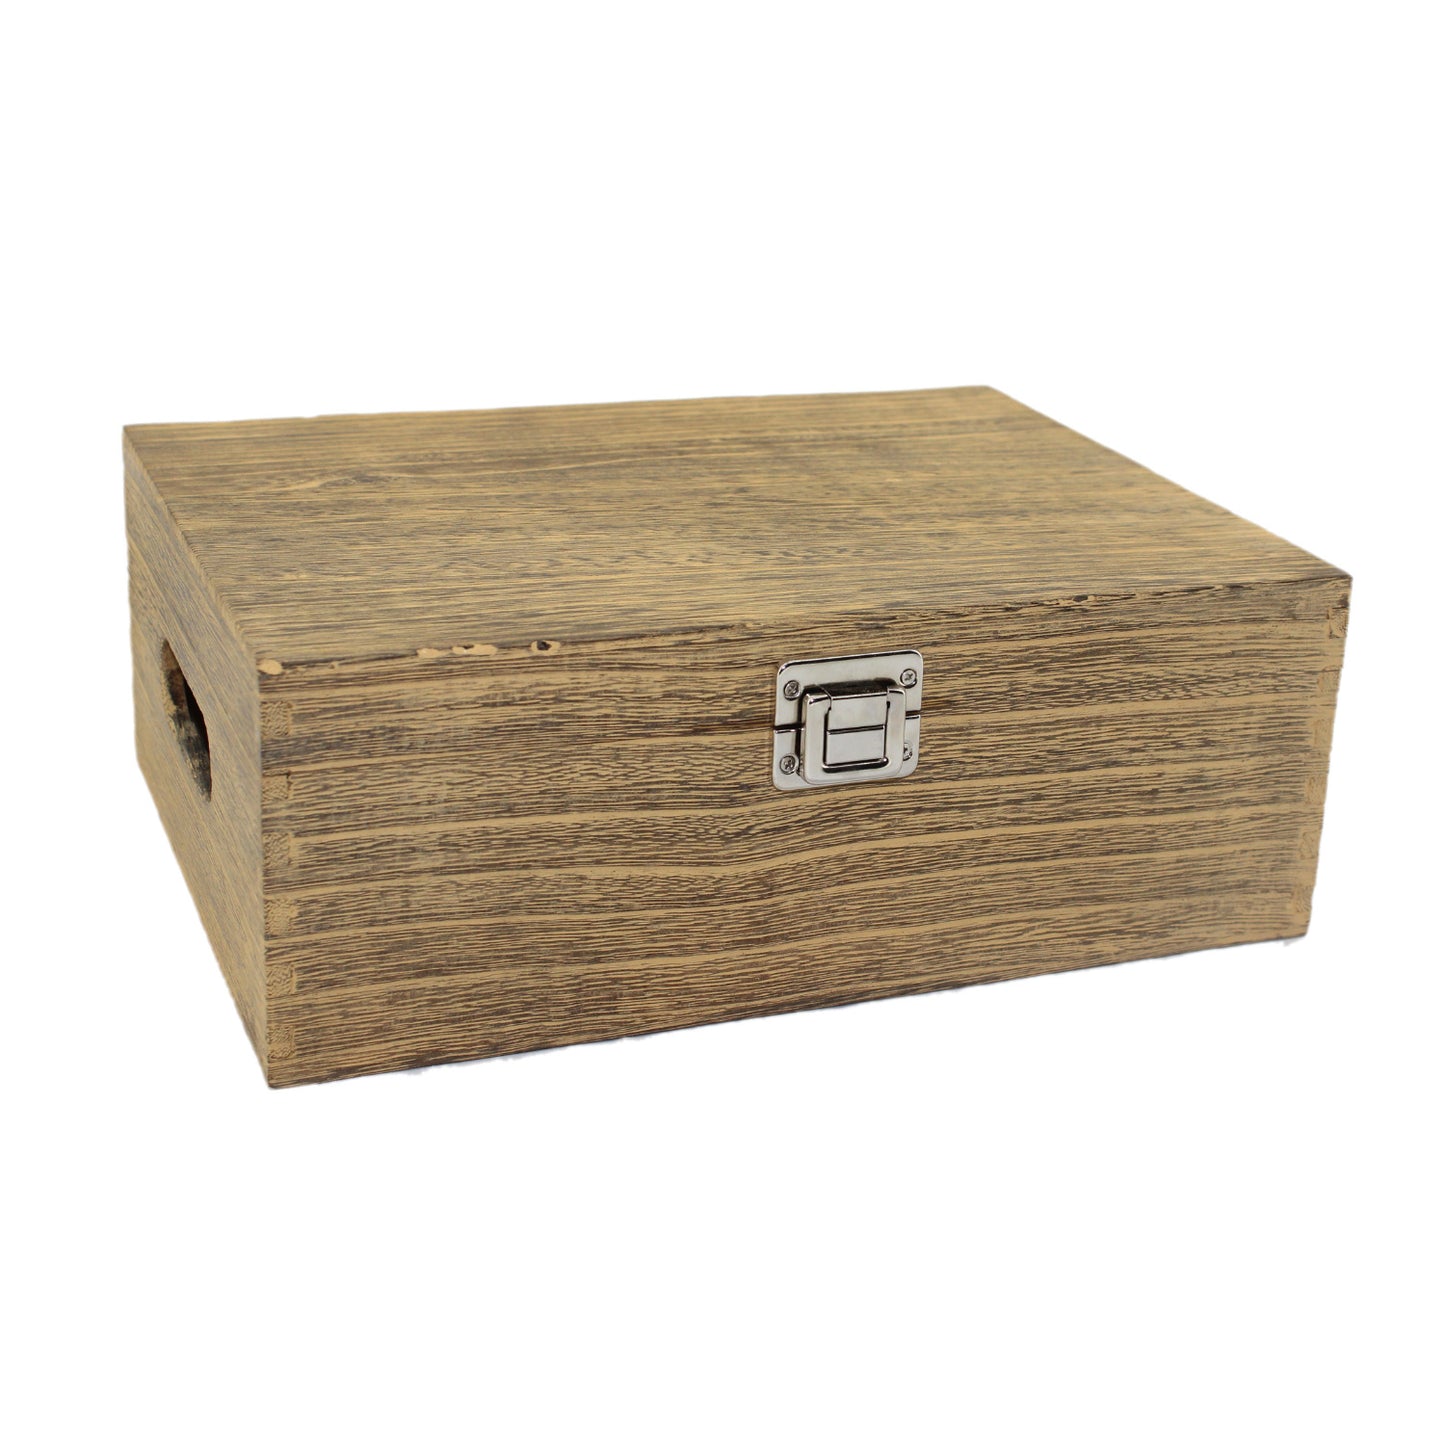 12 Inch Oak Effect Wooden Box